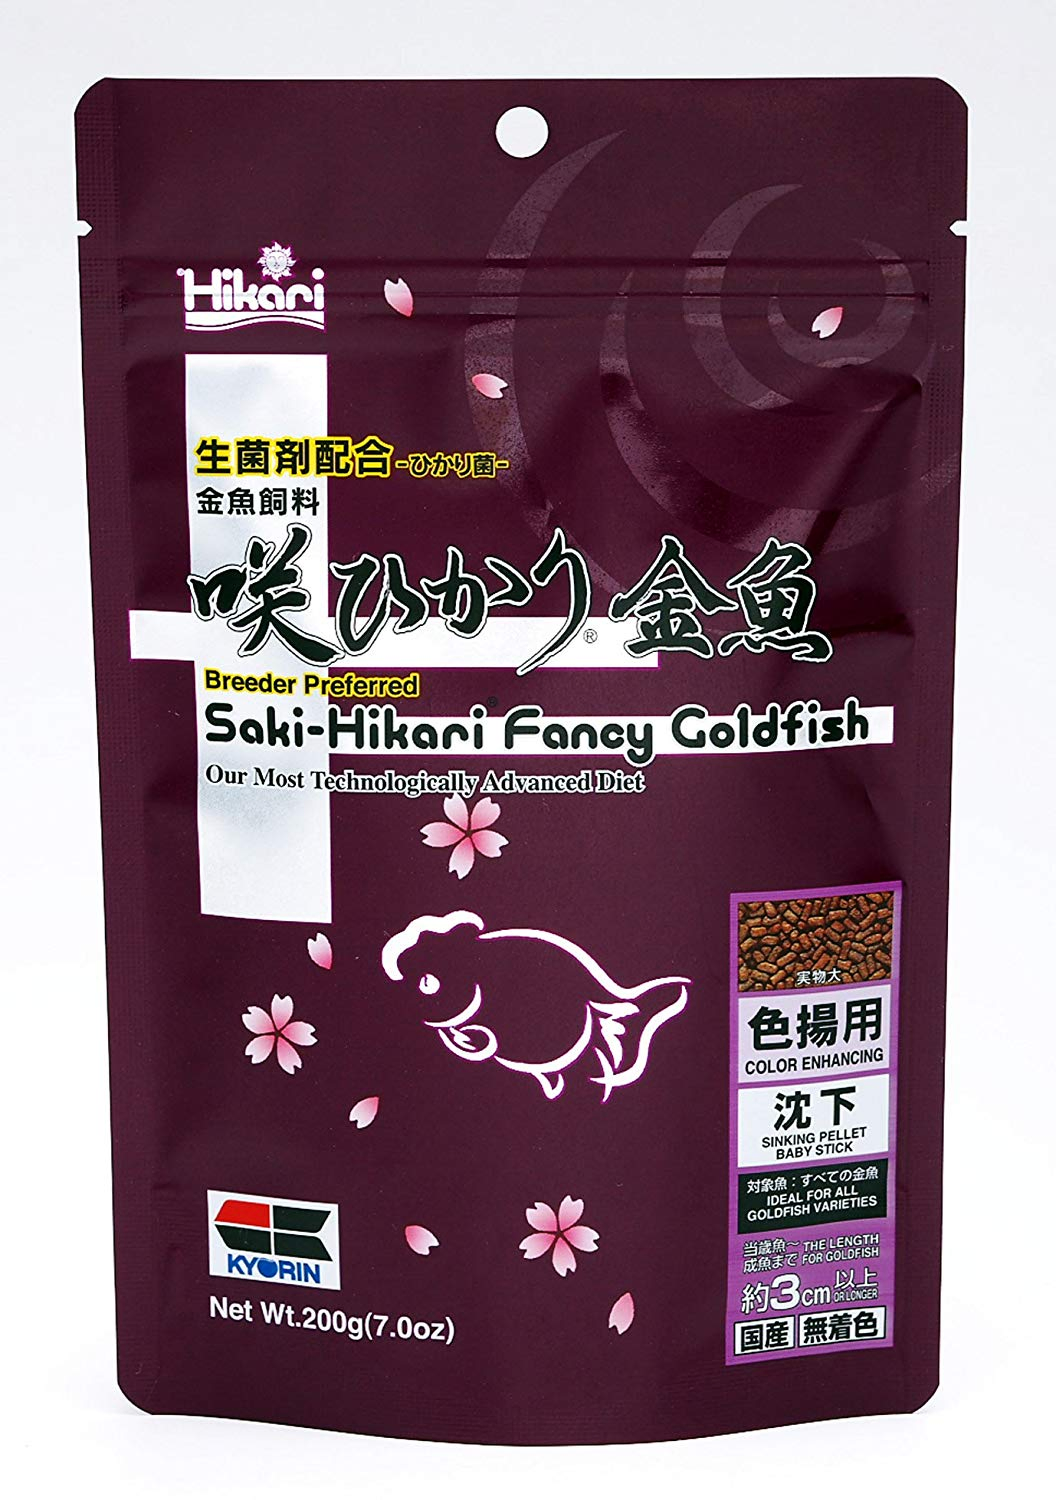 Hikari Saki-Hikari Fancy Goldfish